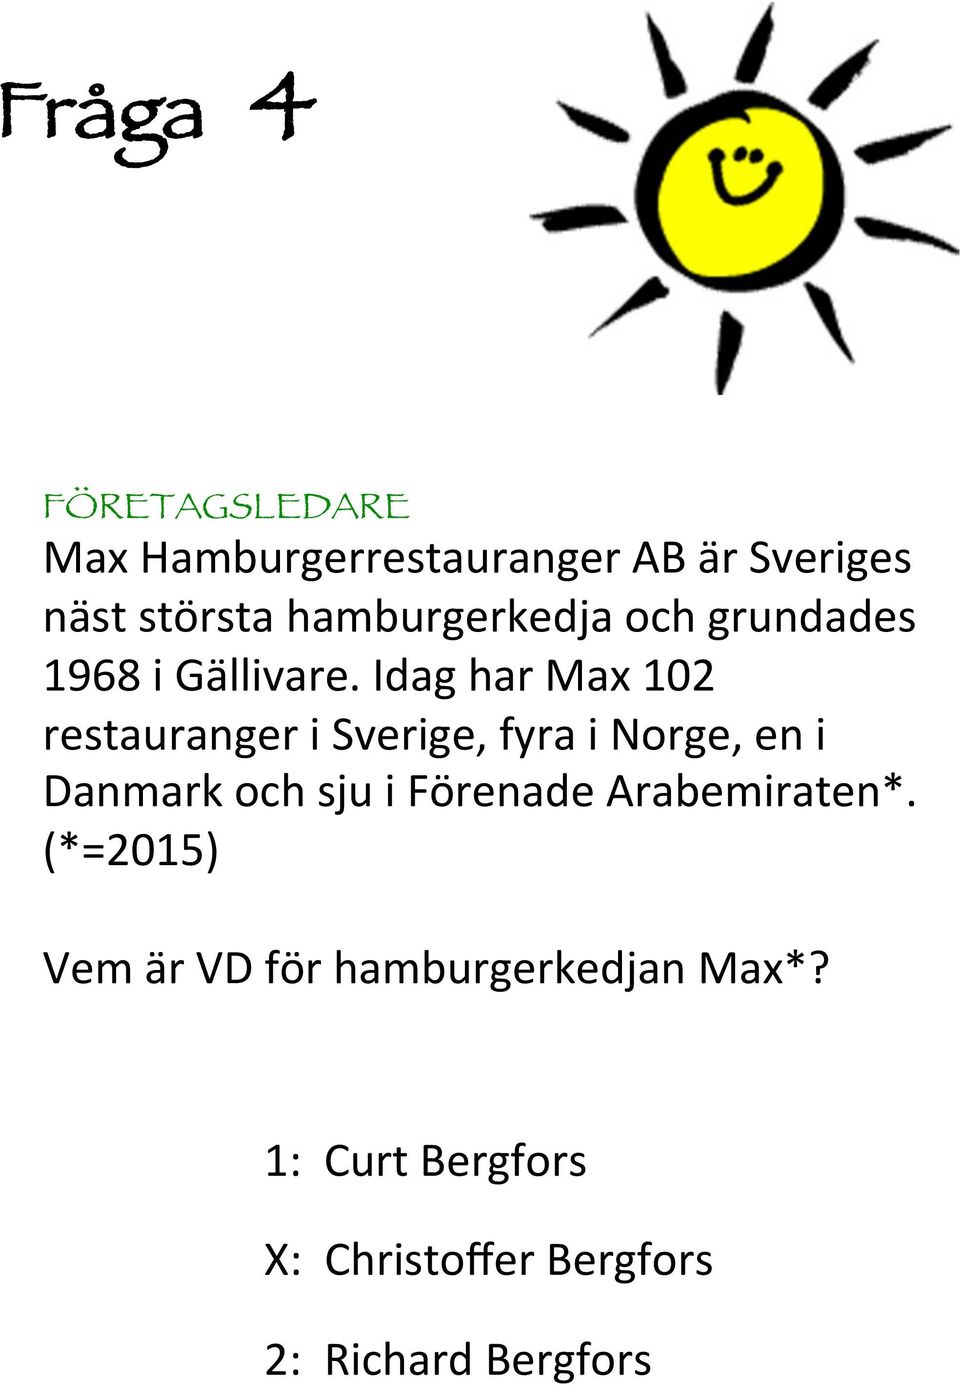 Idag har Max 0 restauranger i Sverige, fyra i Norge, en i Danmark och sju i